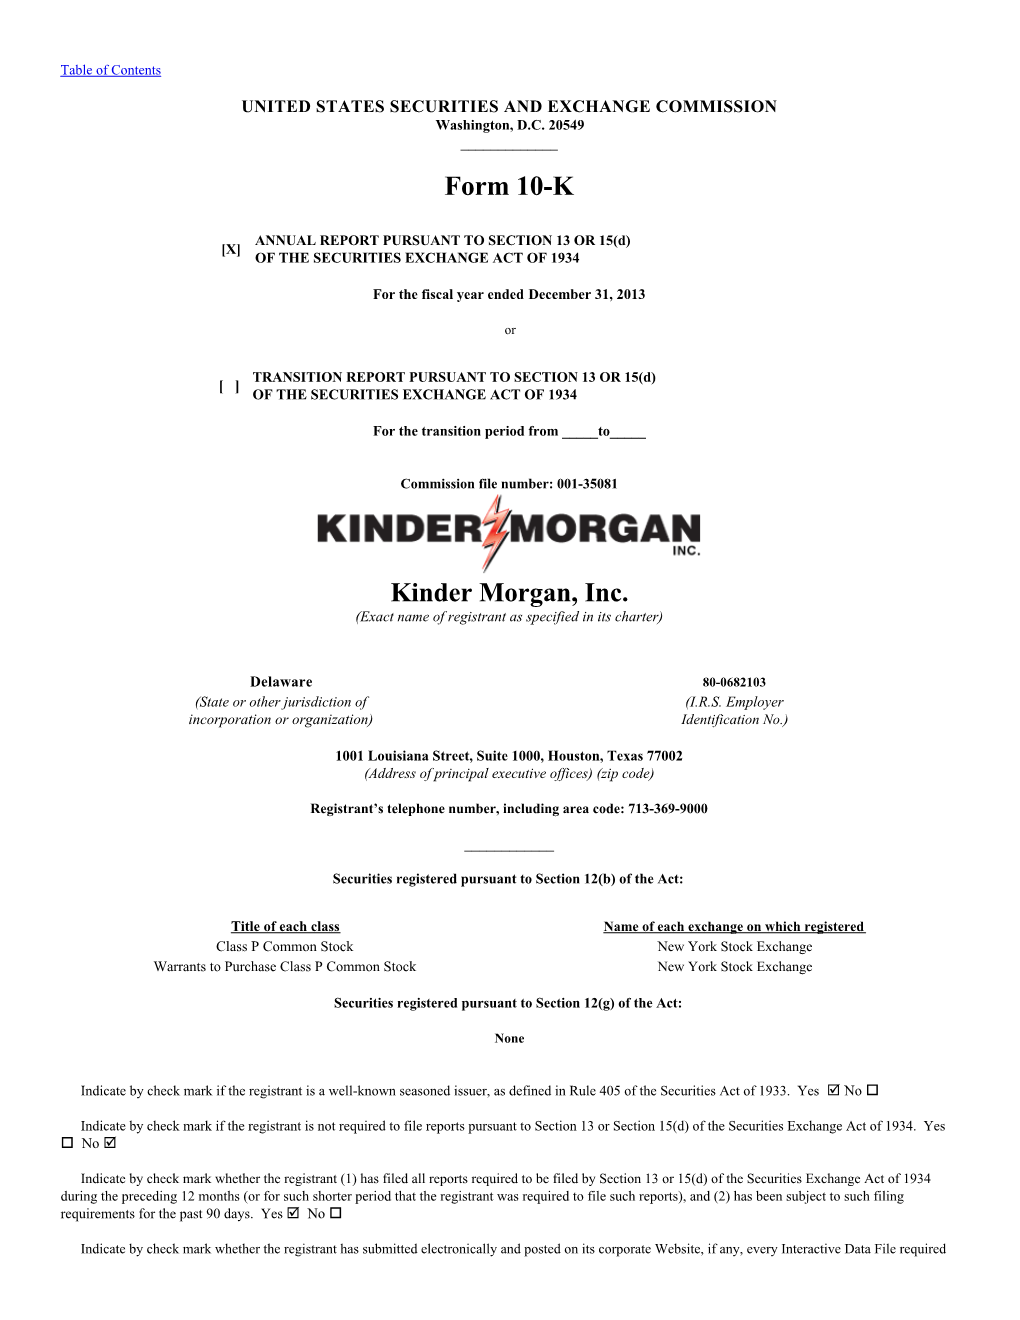 Form 10-K Kinder Morgan, Inc